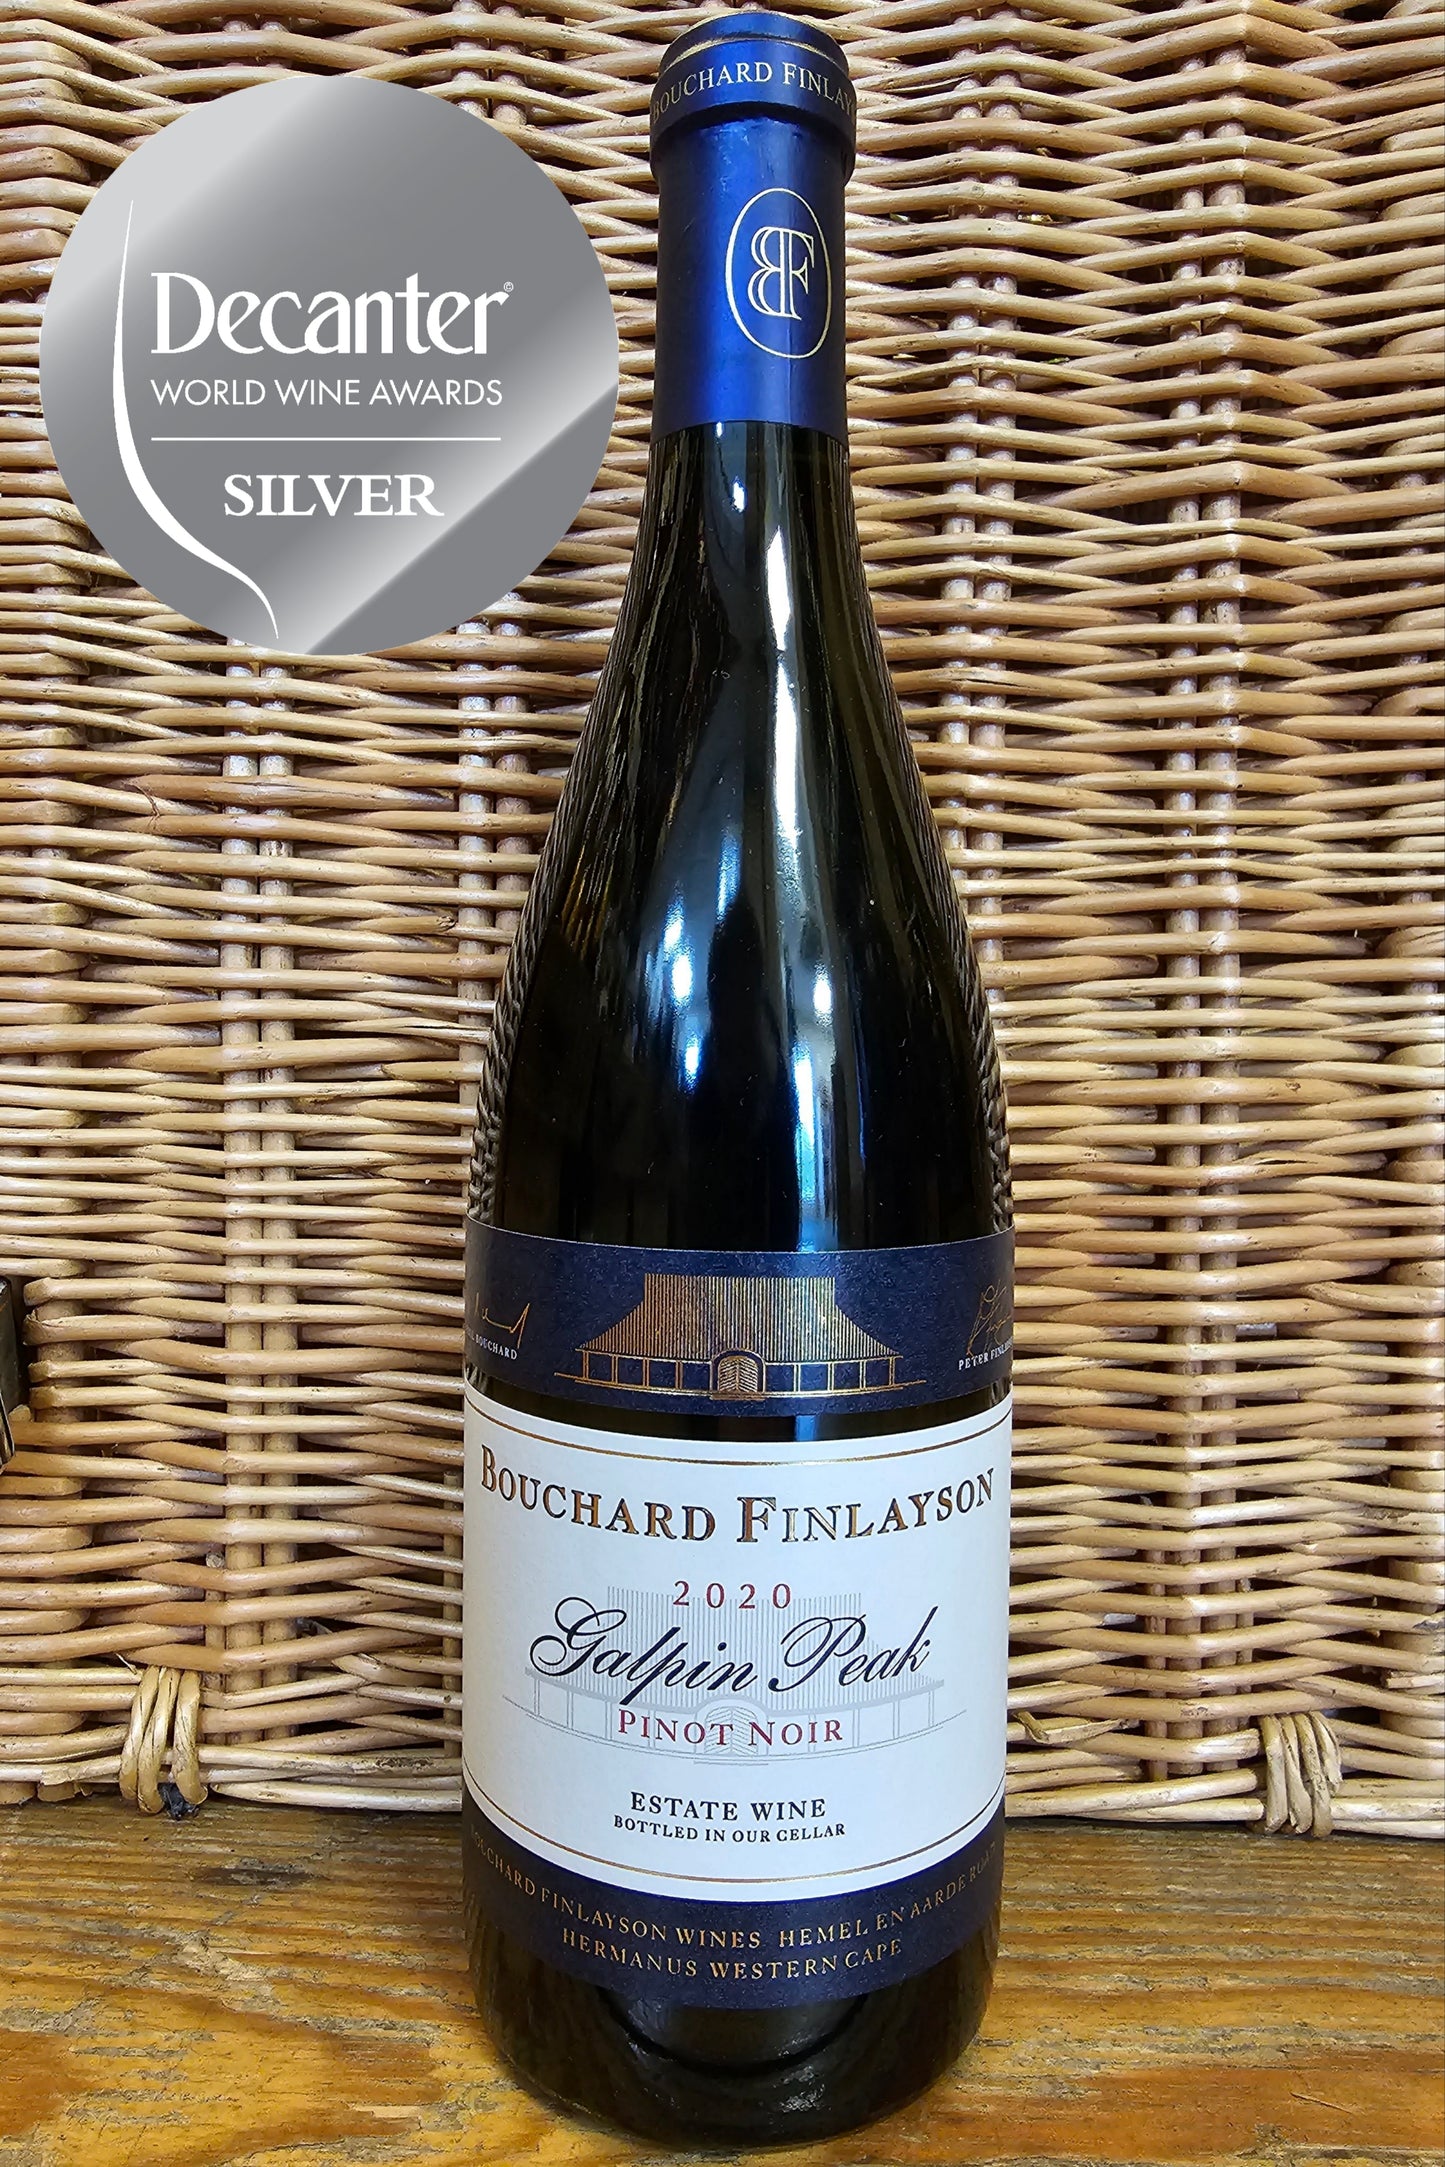 Bouchard Finlayson, Galphin Peak Pinot Noir, 2020